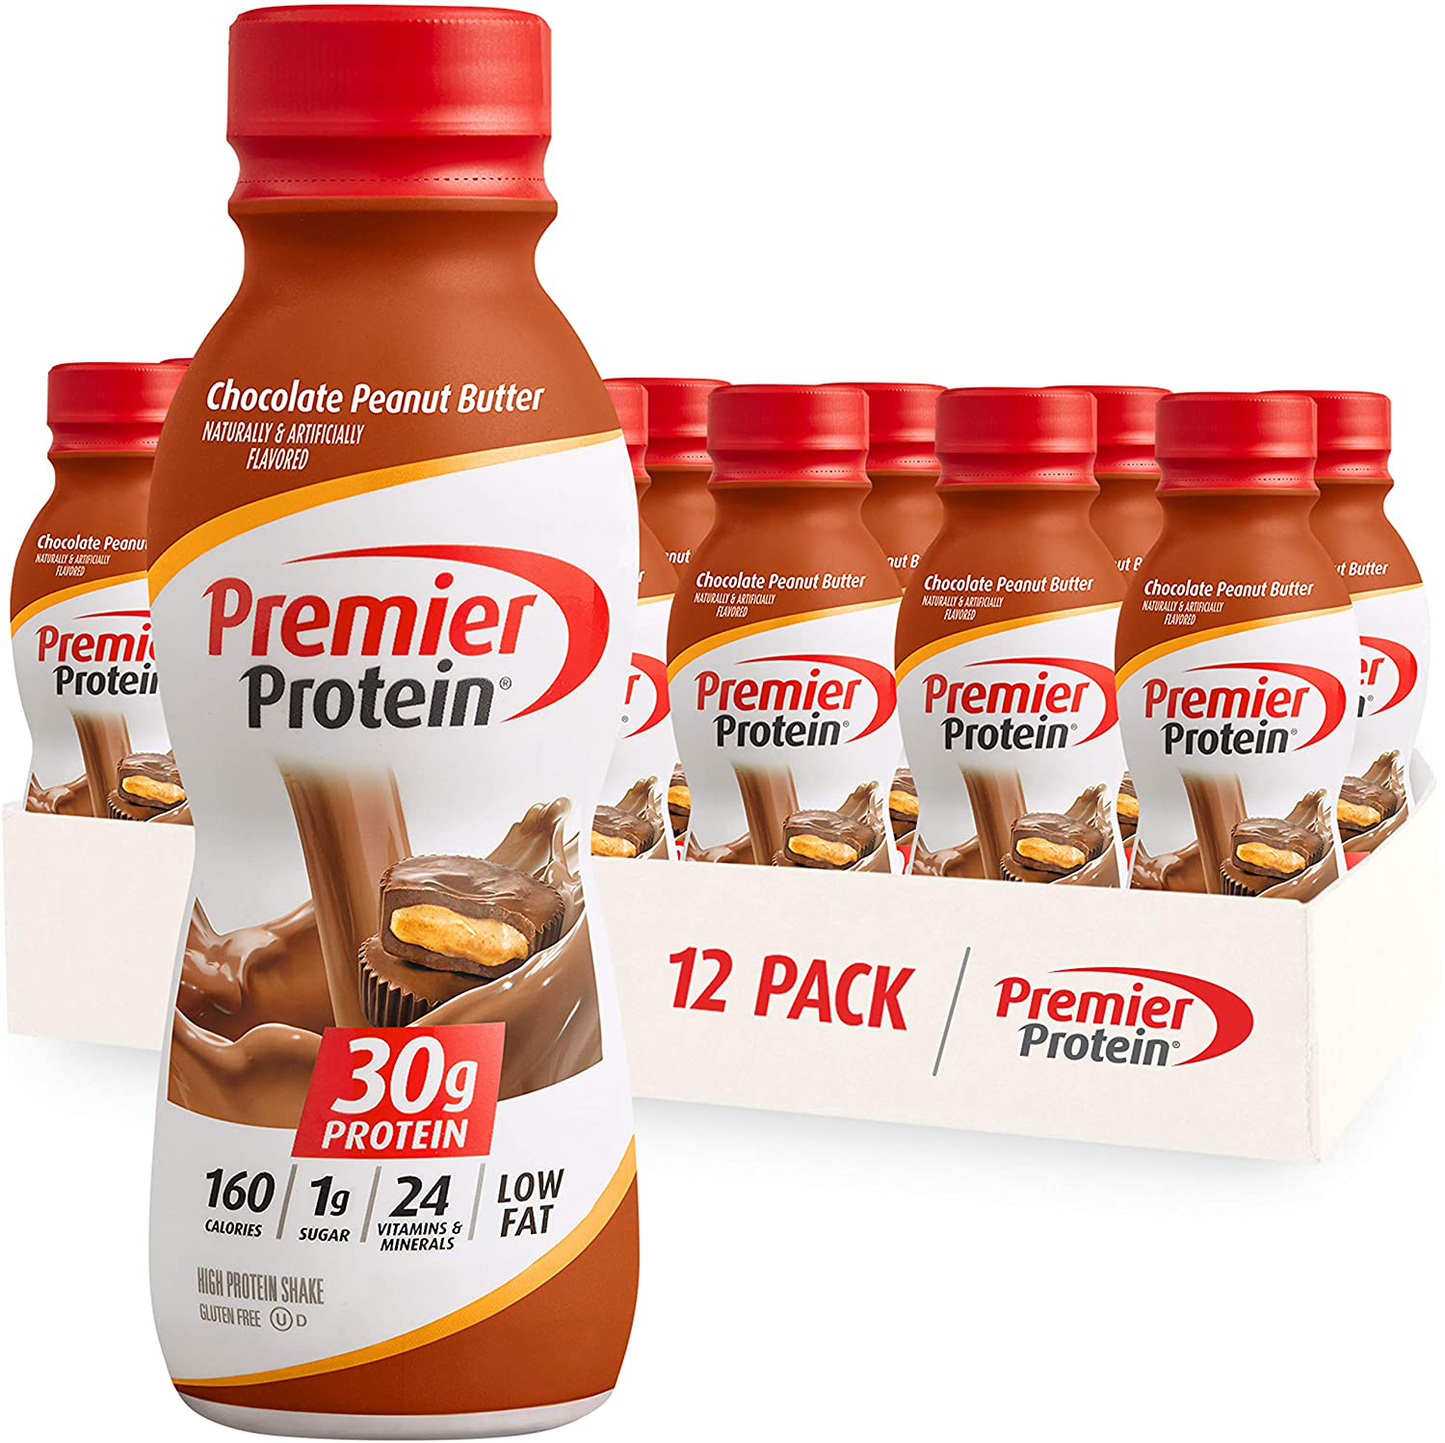 Premier Protein Shake 30g Protein, 1g Sugar, 24 Vitamins & Minerals, Nutrients to Support Immune Health, 12 Pack, 138.0 Fl Oz